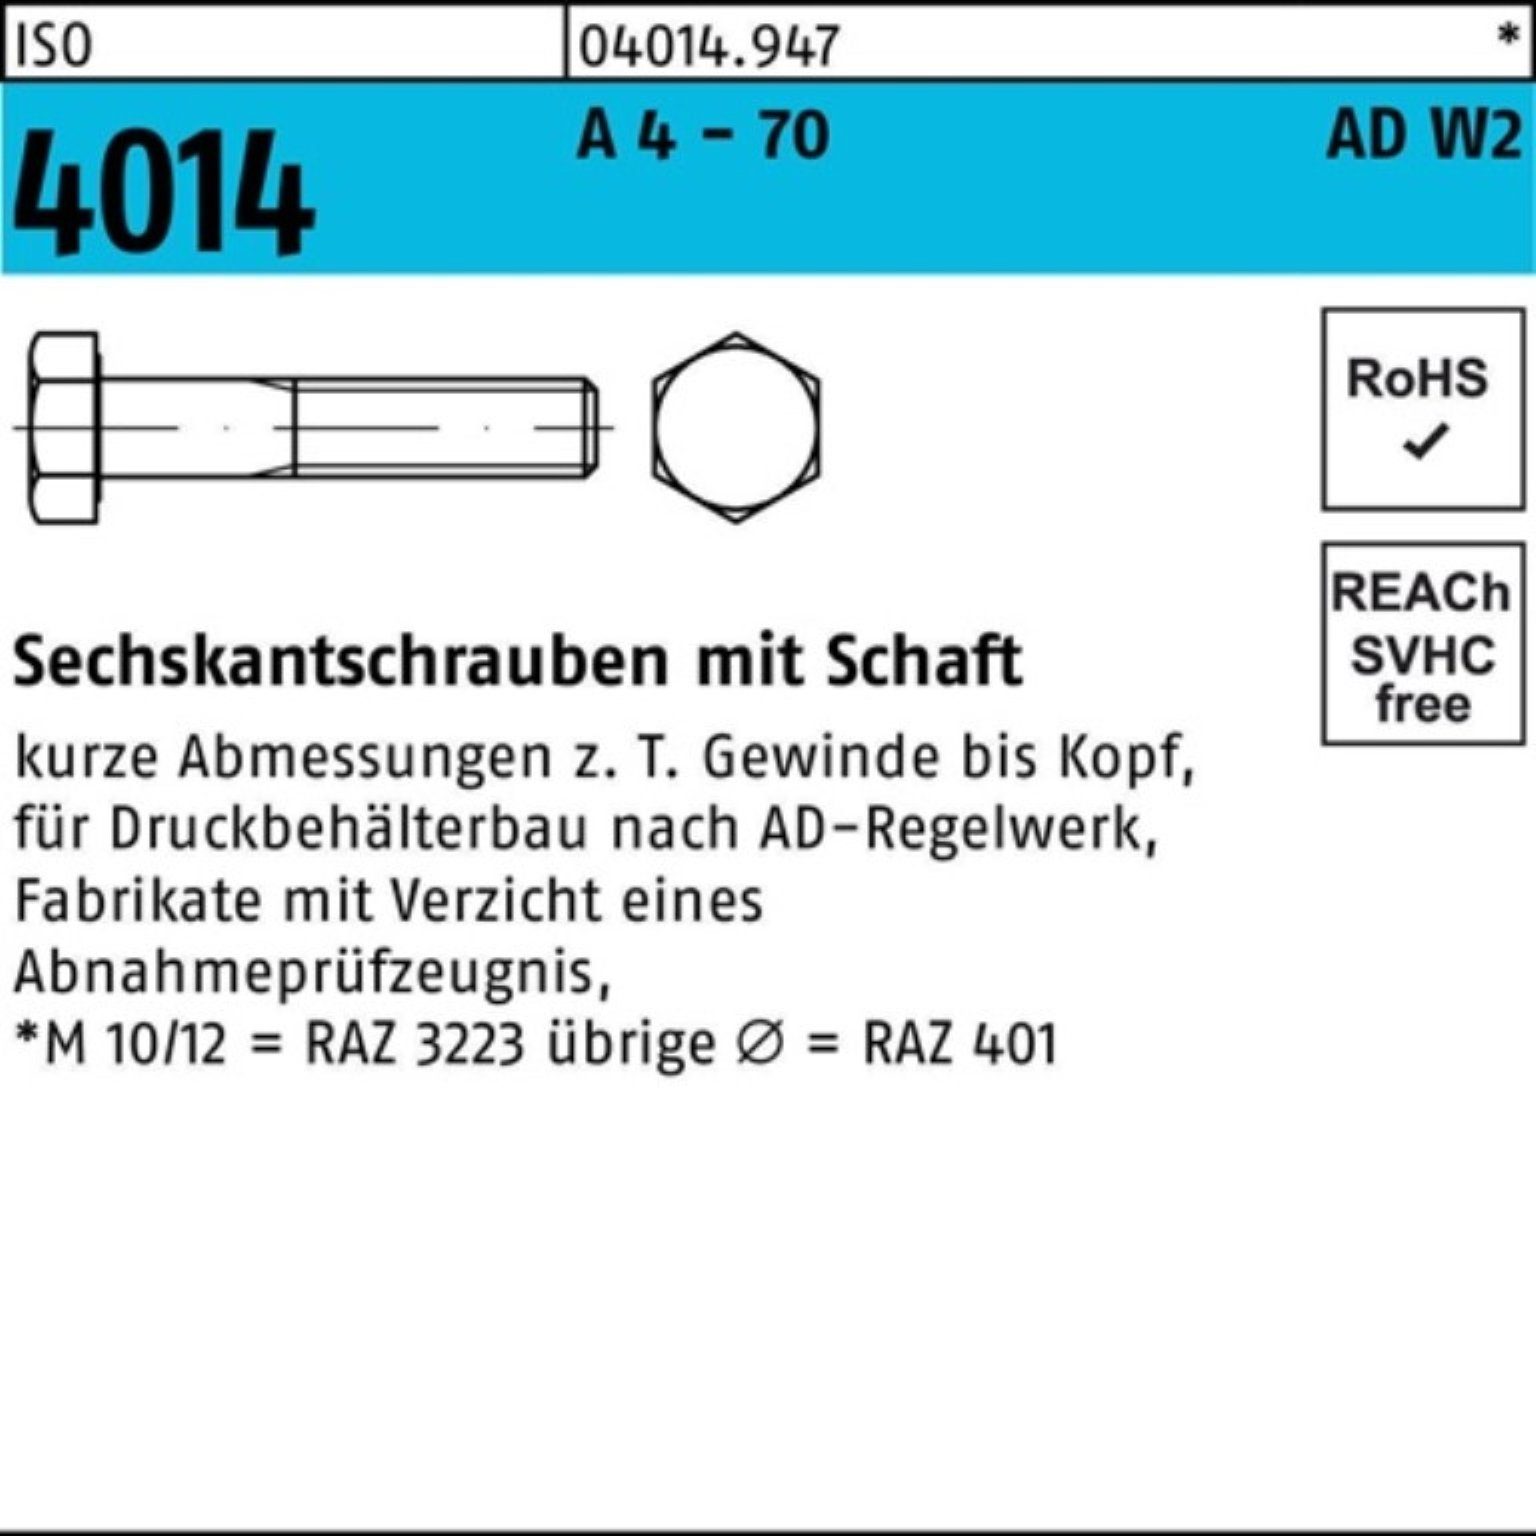 Bufab Sechskantschraube 100er Pack Sechskantschraube ISO 4014 Schaft M16x 55 A 4 - 70 AD-W2 25